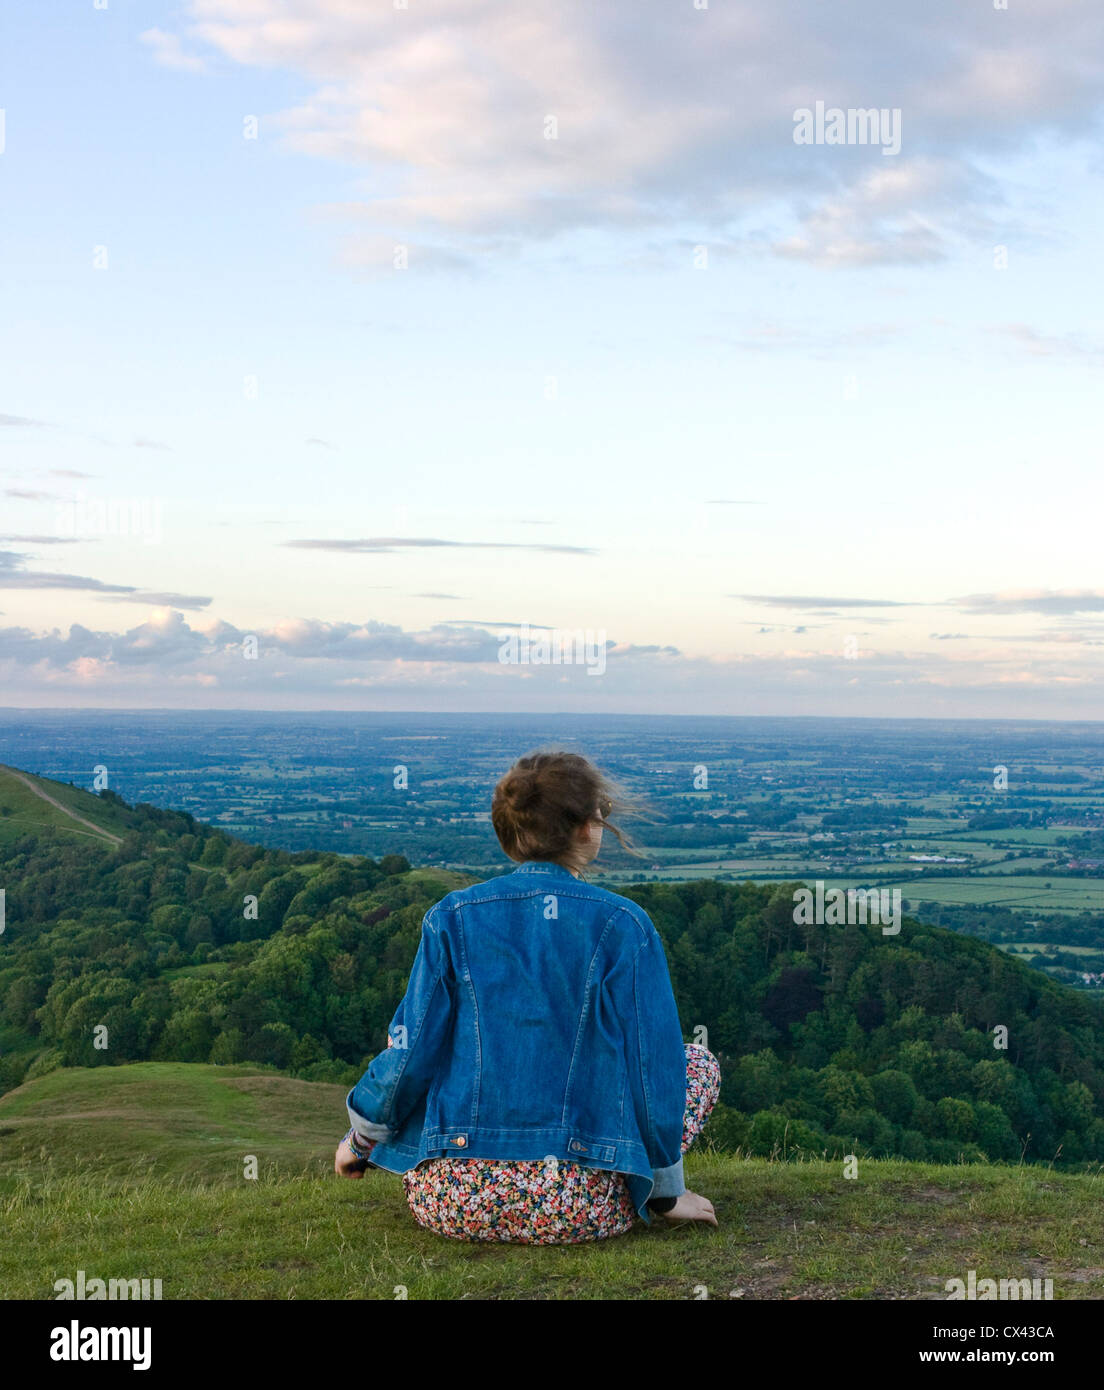 Adolescente et panorama vue panoramique depuis les collines de Malvern Worcestershire angleterre Europe au crépuscule Banque D'Images